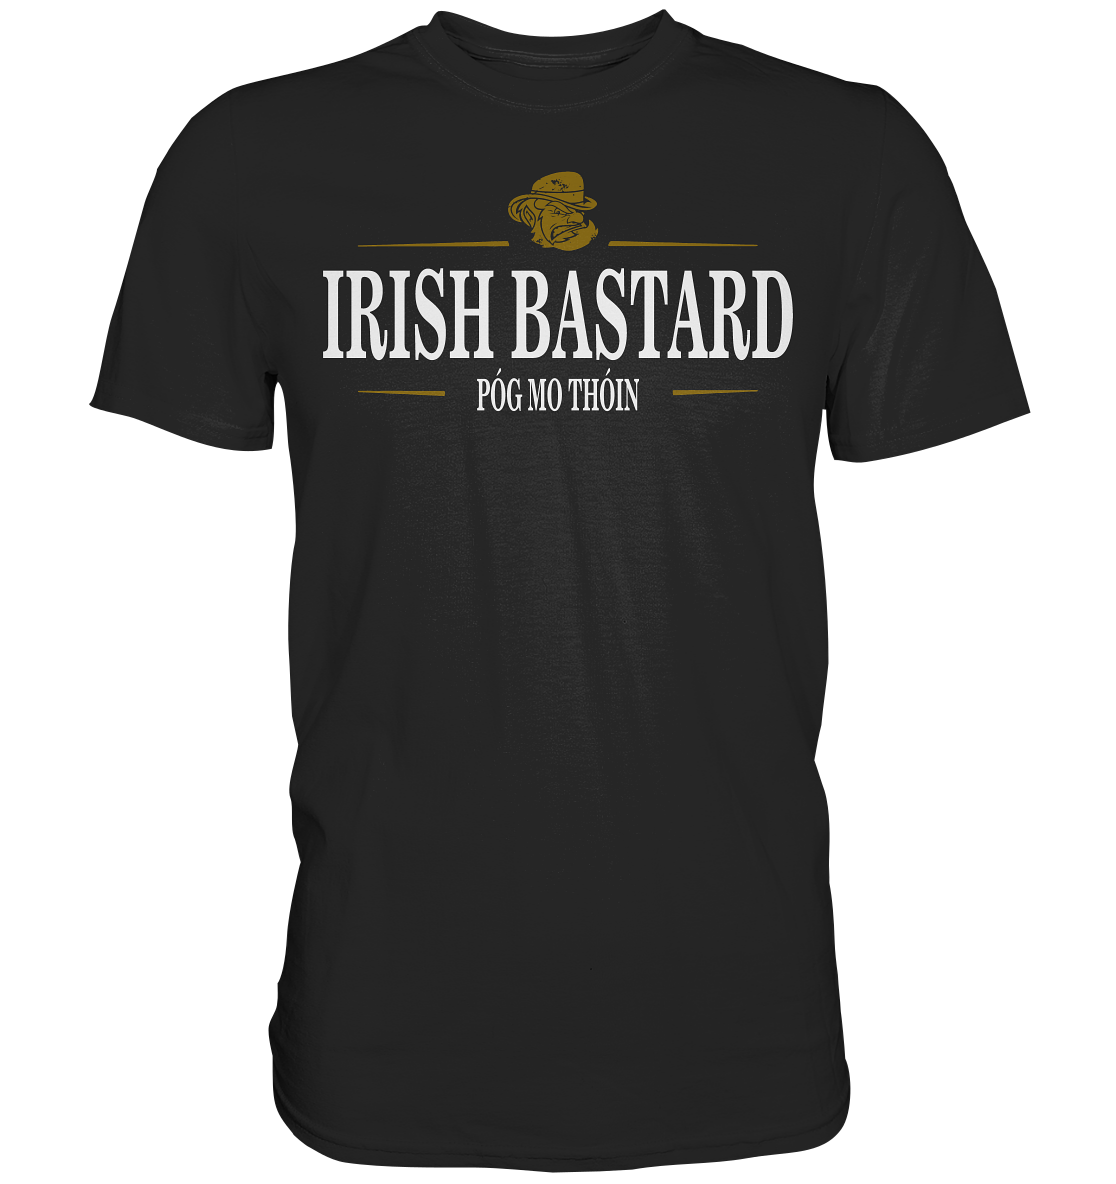 Irish Bastard "Póg Mo Thóin" - Premium Shirt